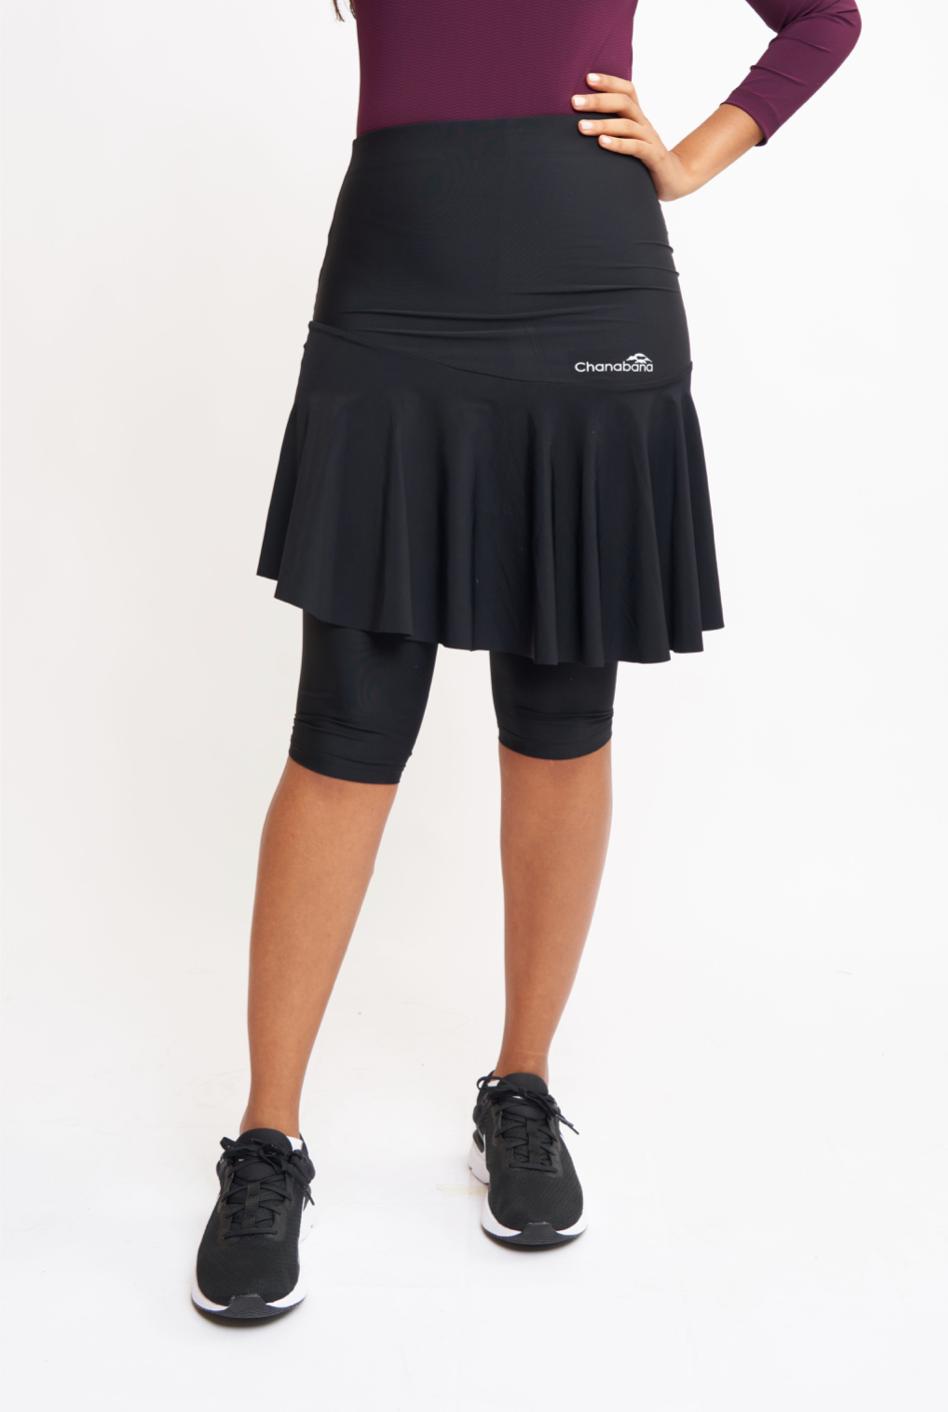 Black Tennis Flair Skirt by Chanabana Modest Activewear